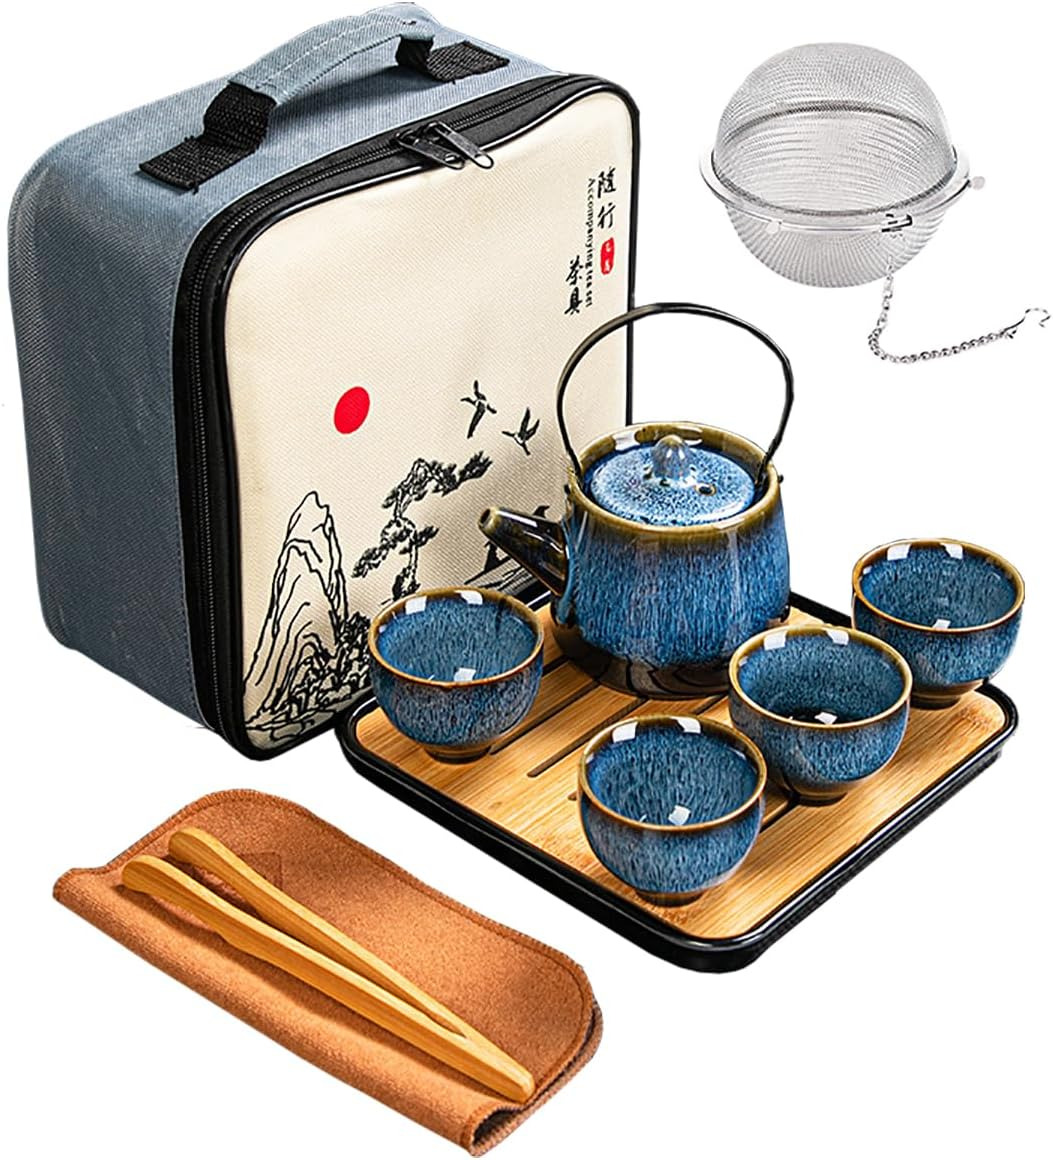 Chinese/Japanese Tea Set, Tea Sets for Women/Adults,Gongfu/Porcelain Tea Set,Tea